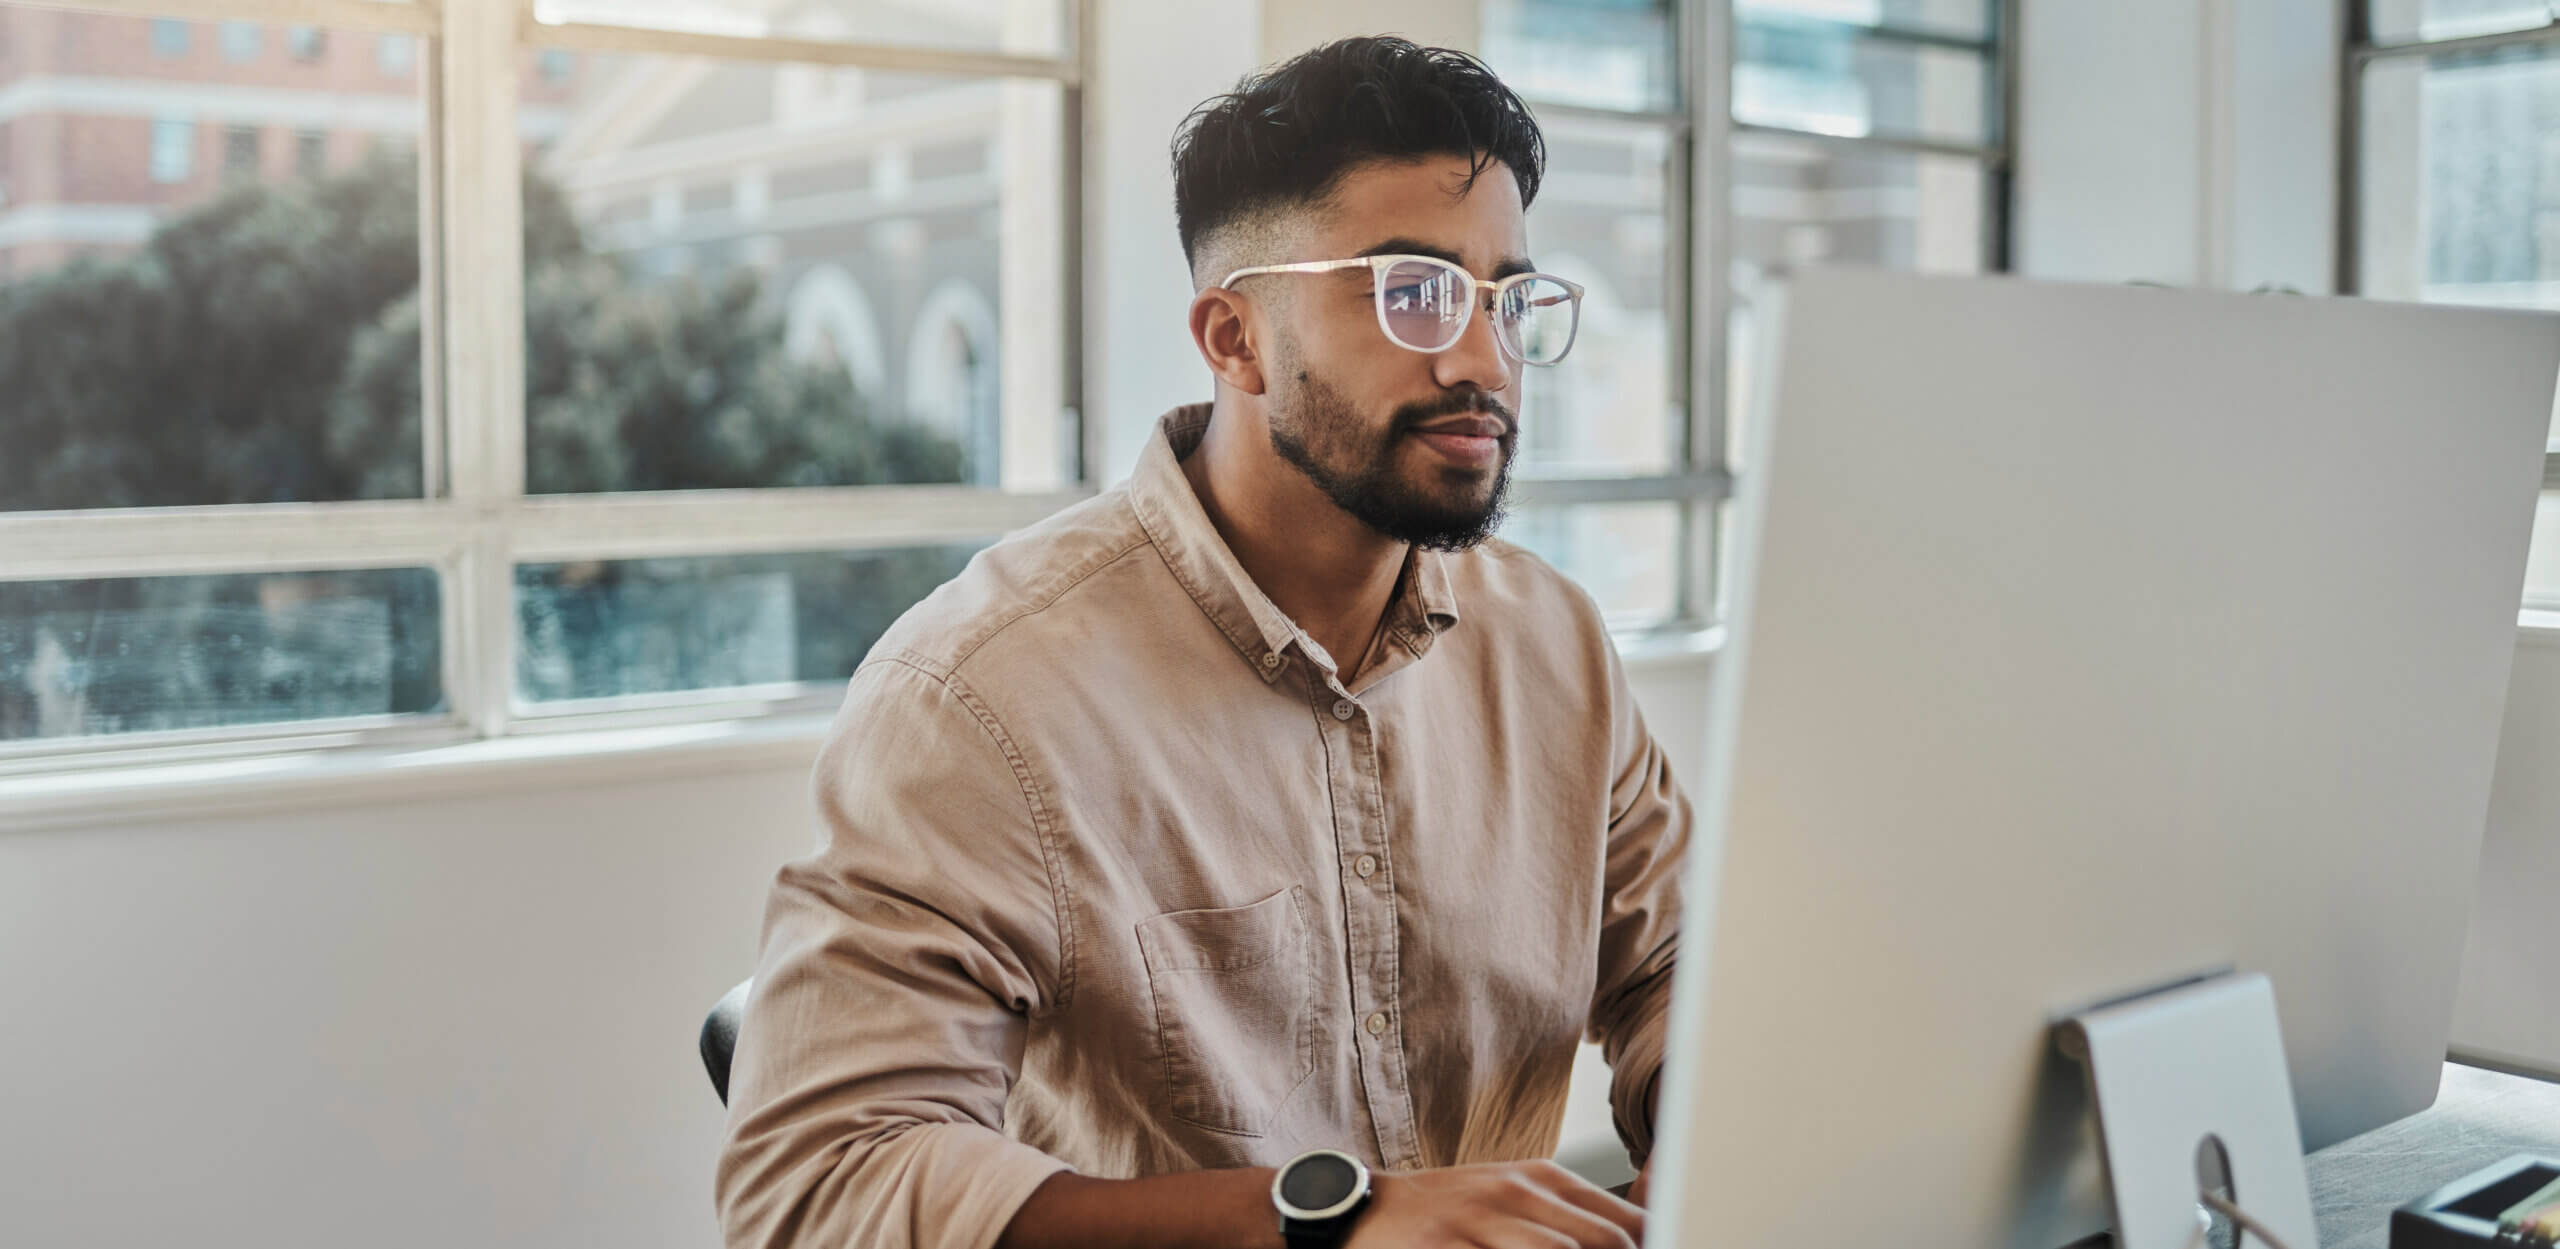 man with glasses, brown shirt looking at monitor at desk